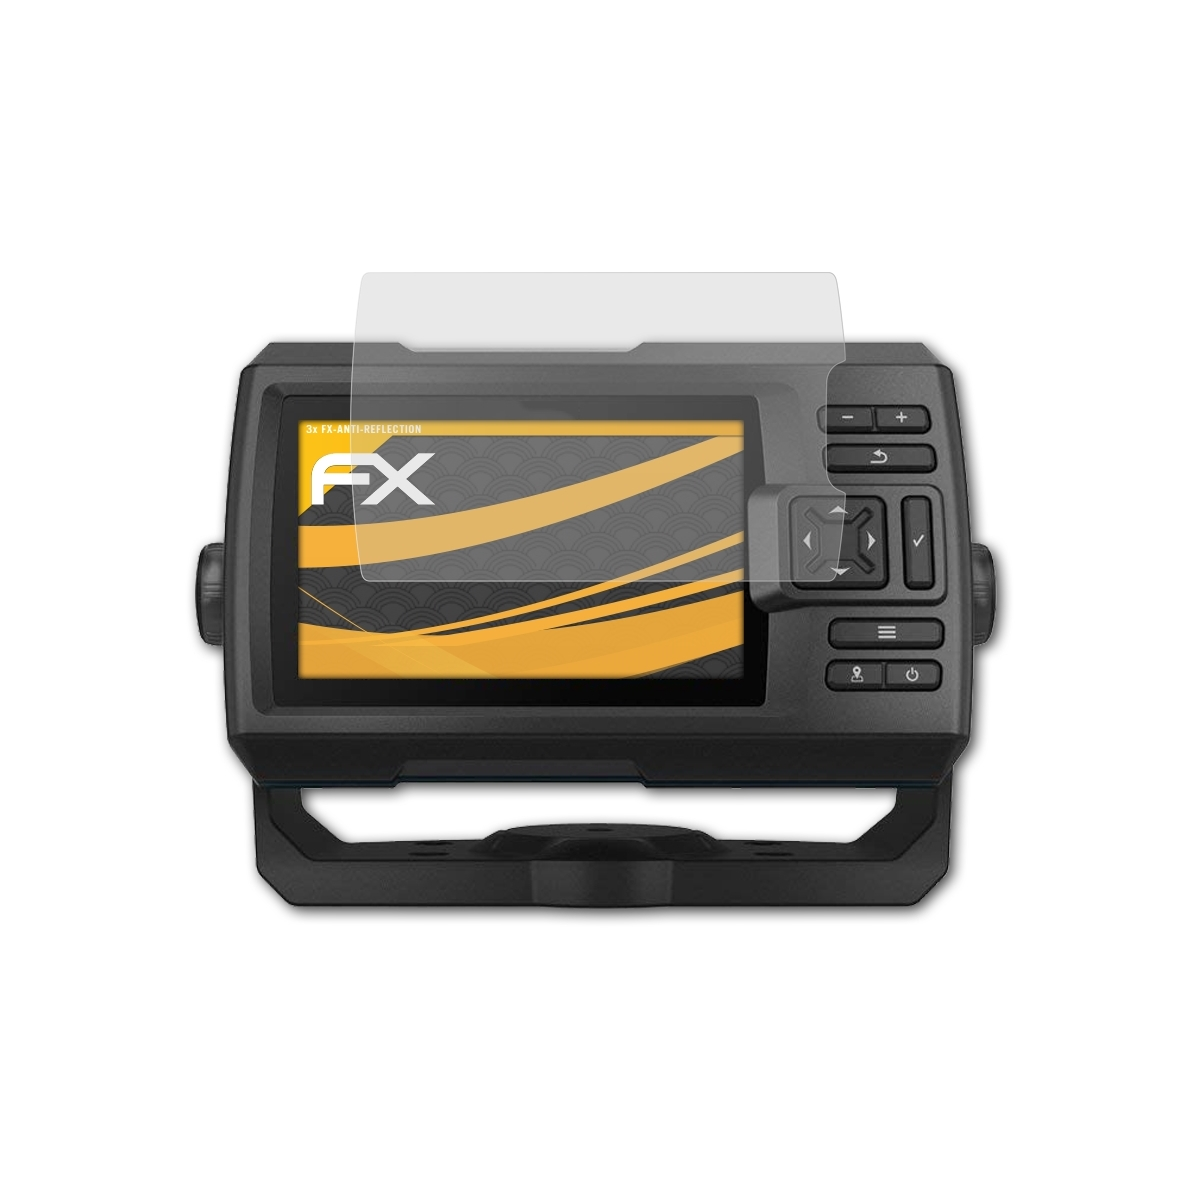 ATFOLIX 3x FX-Antireflex Displayschutz(für 5cv) Striker Garmin Plus